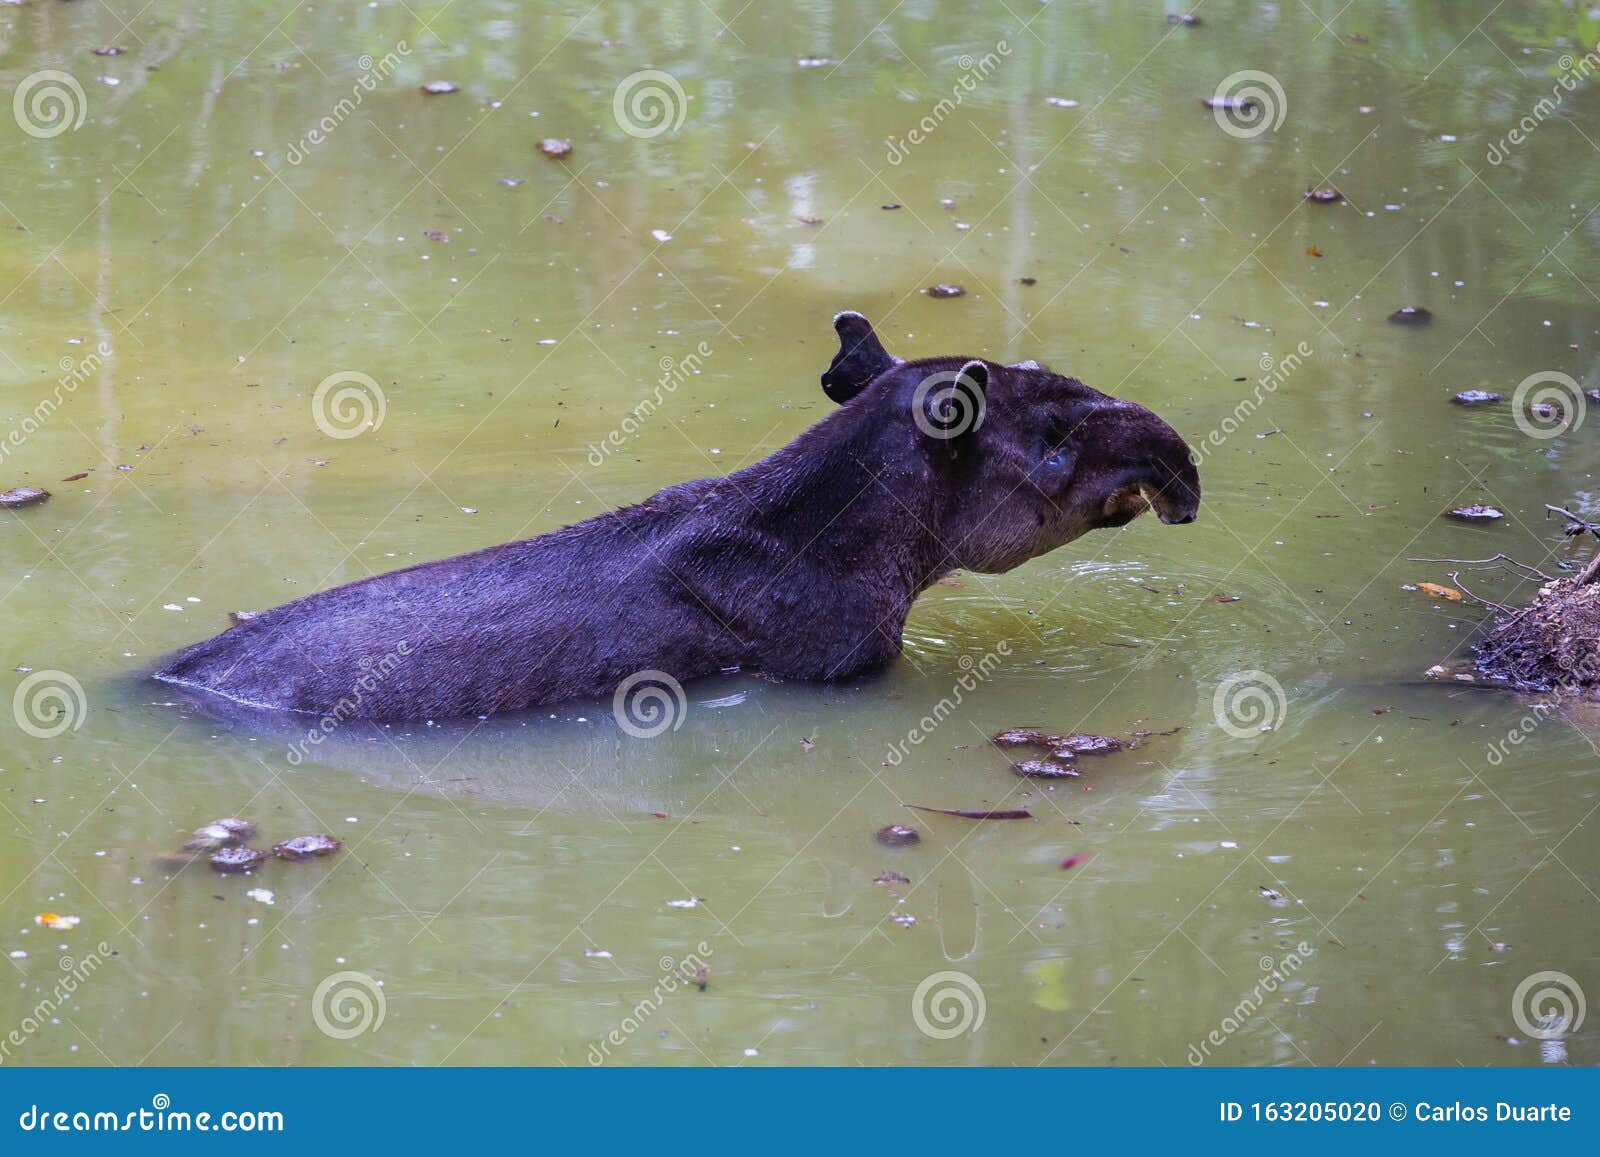 wildlife: baird tapir is seen bathing in water reserve in the jungle